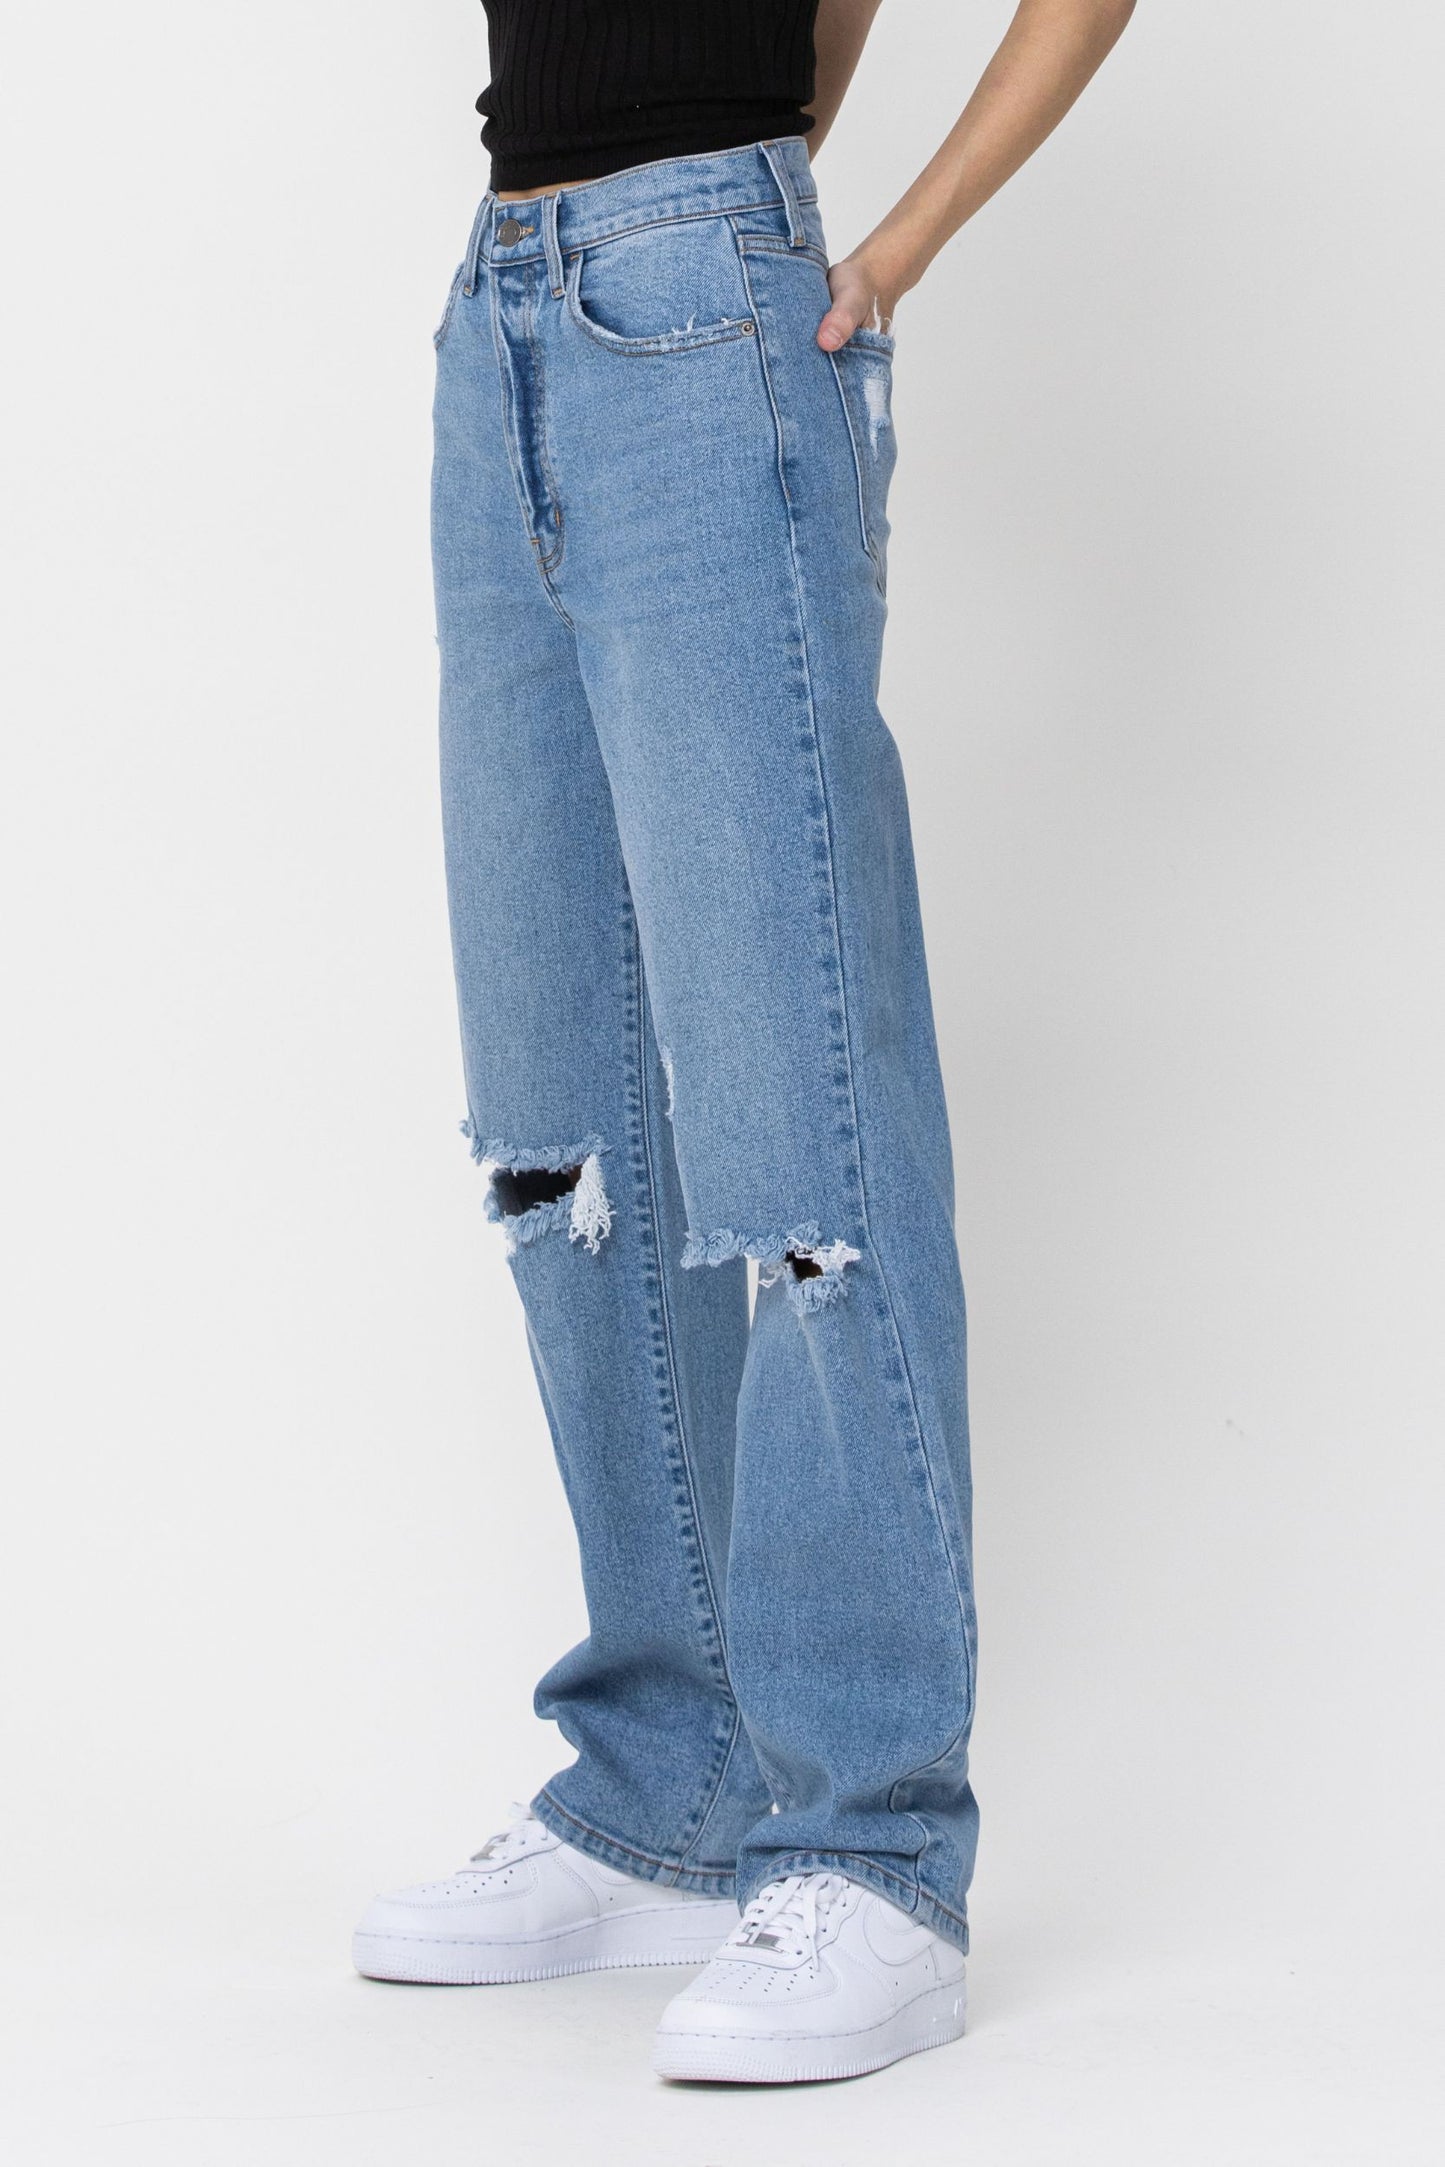 Stassie Jeans